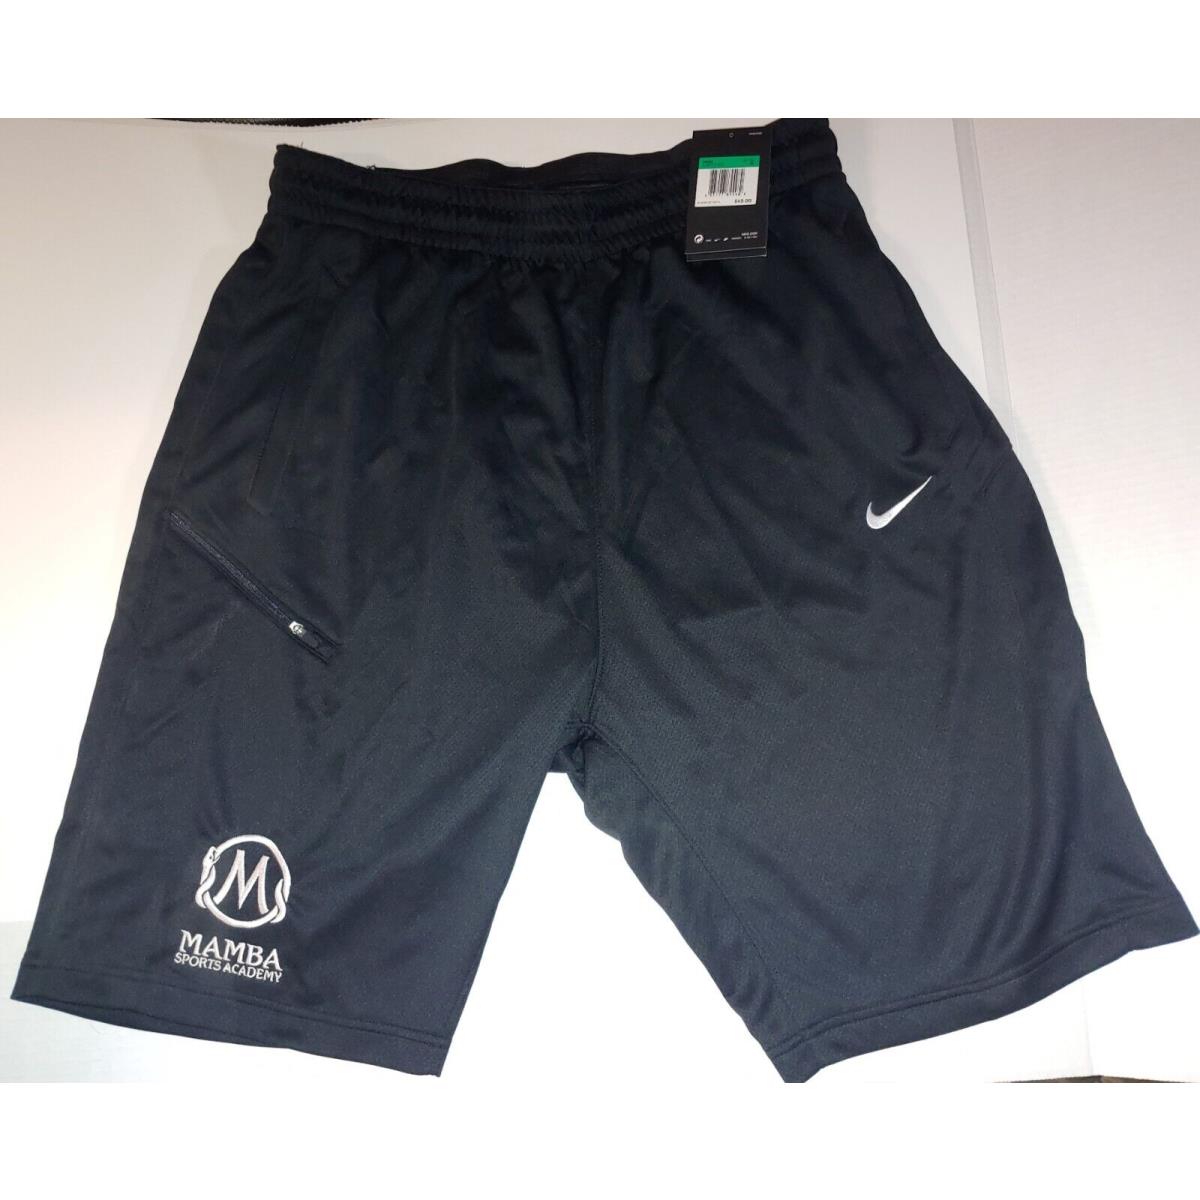 Nike Mamba Sports Academy Shorts Men s Size XL Basketball Kobe Dri-fit Rare